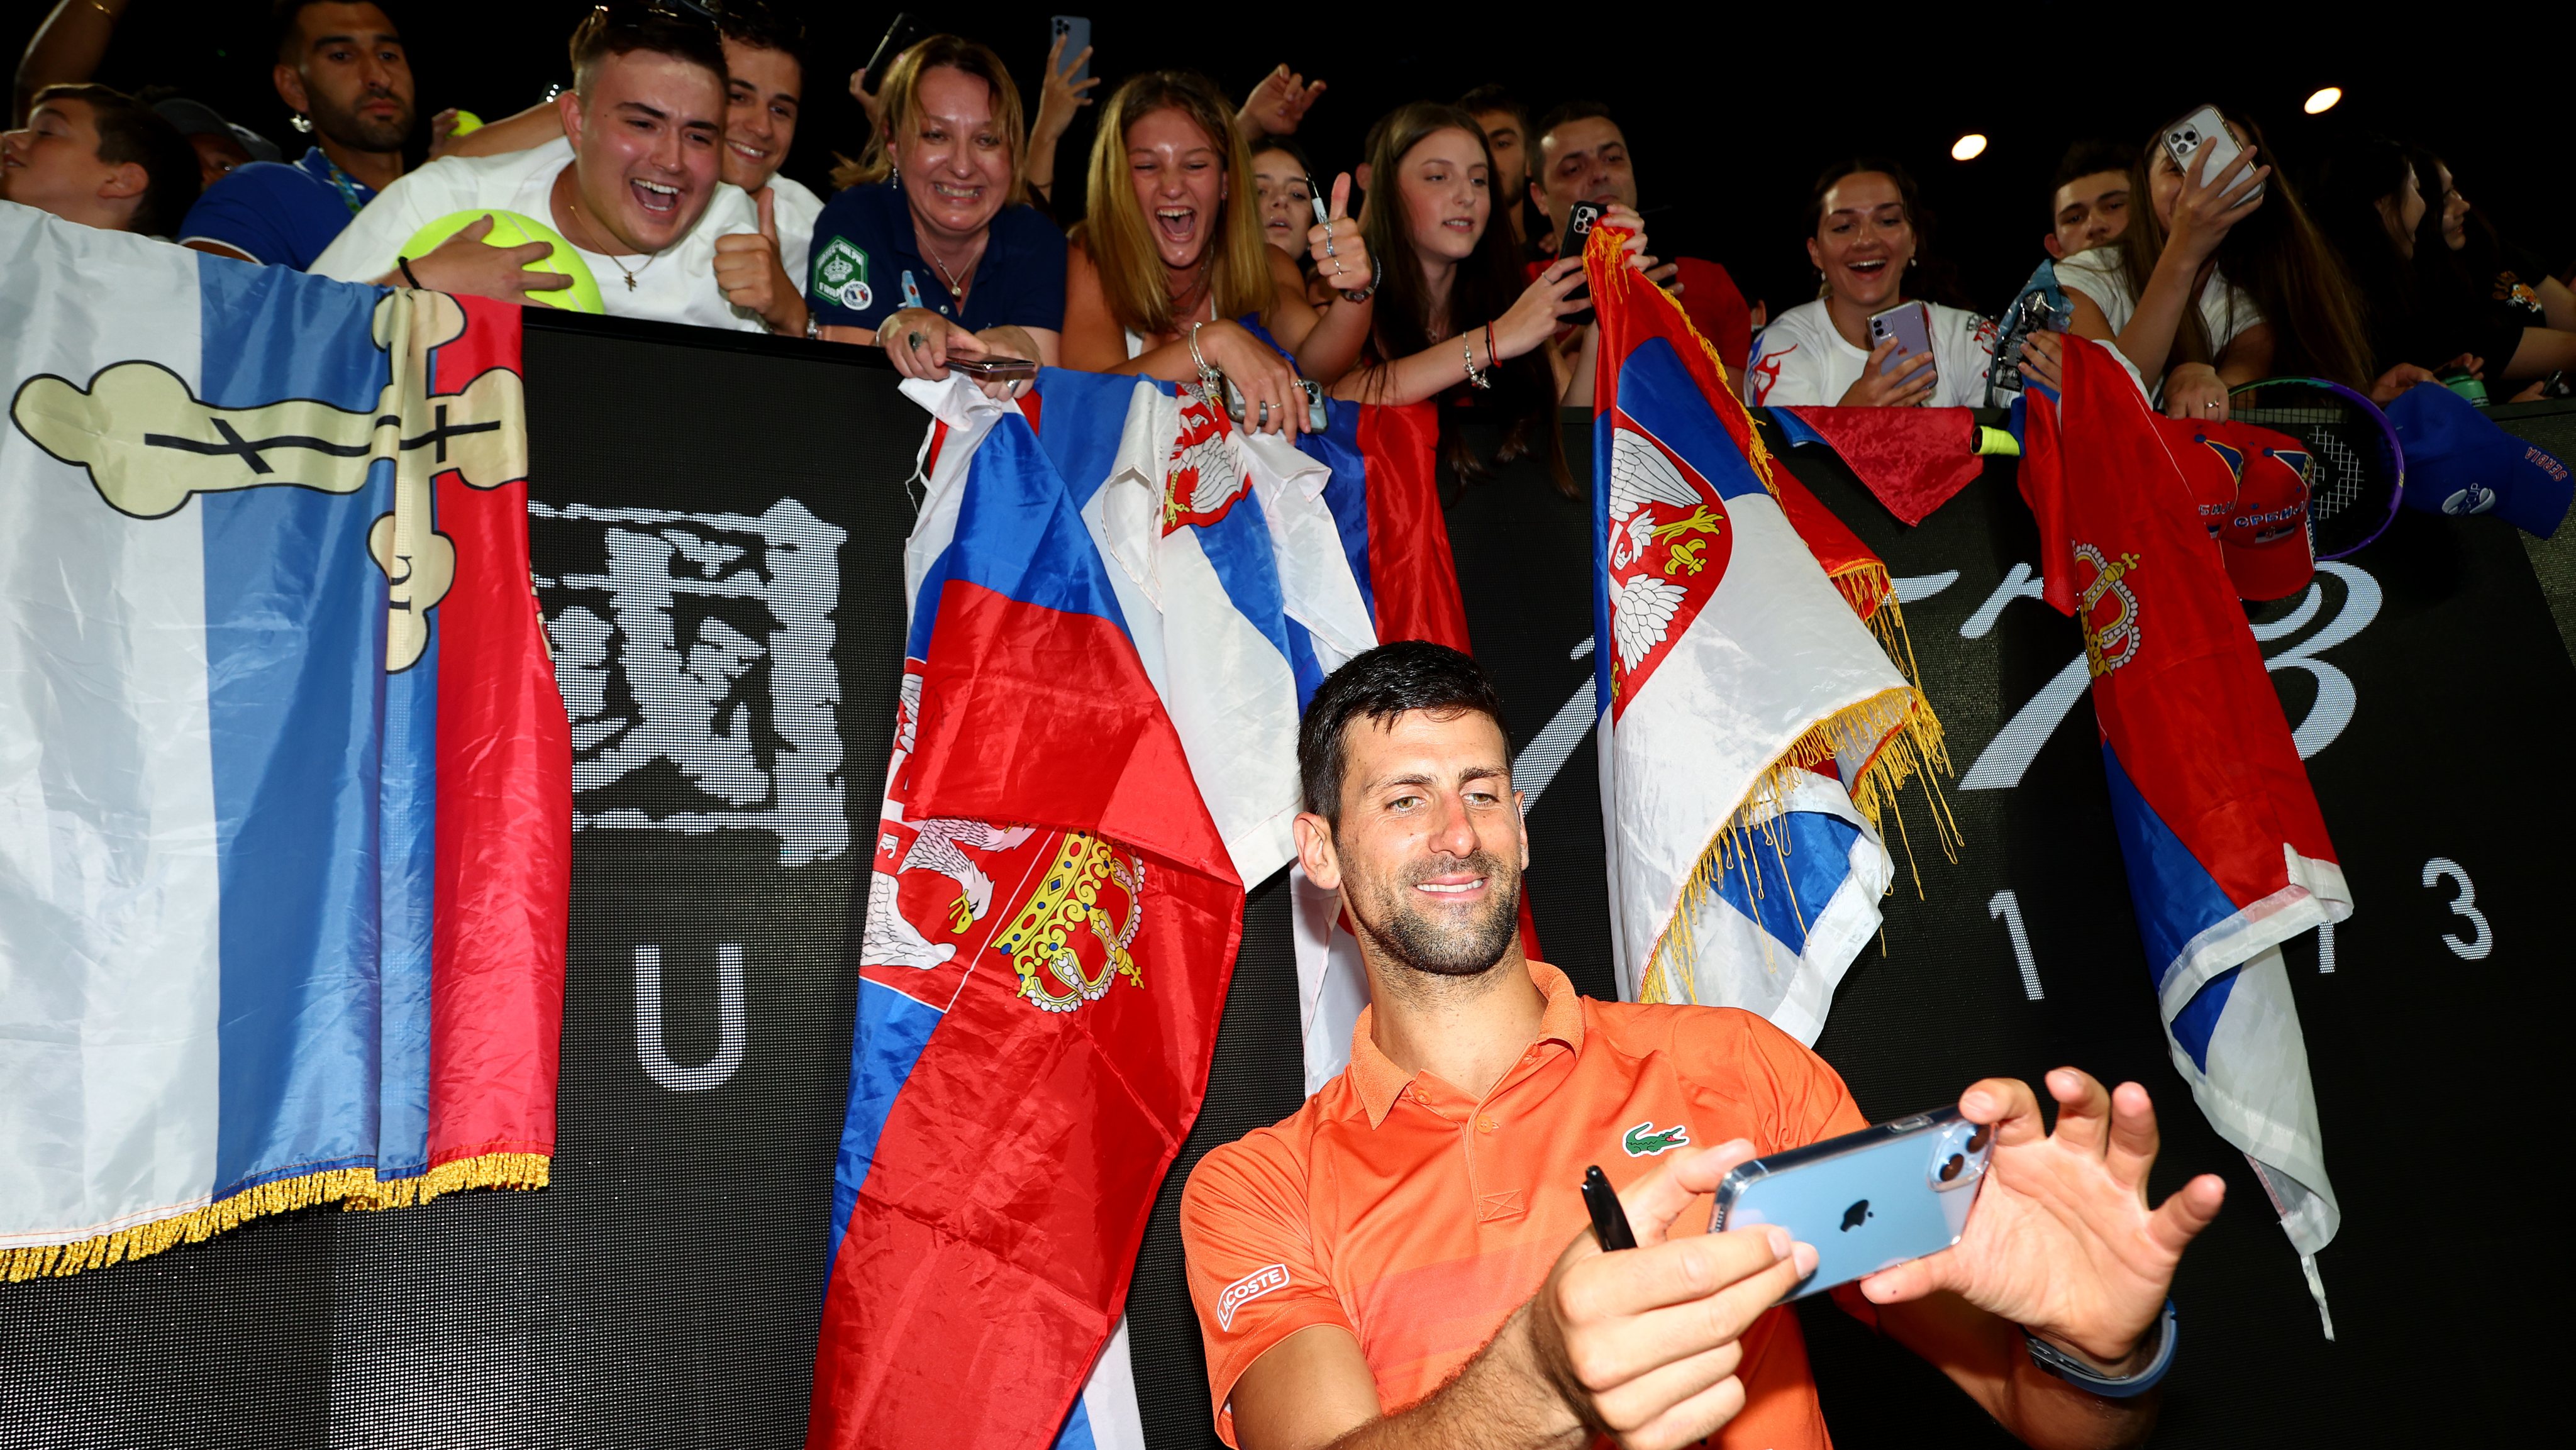 No segundo jogo após ser deportado, Djokovic volta a vencer em Dubai